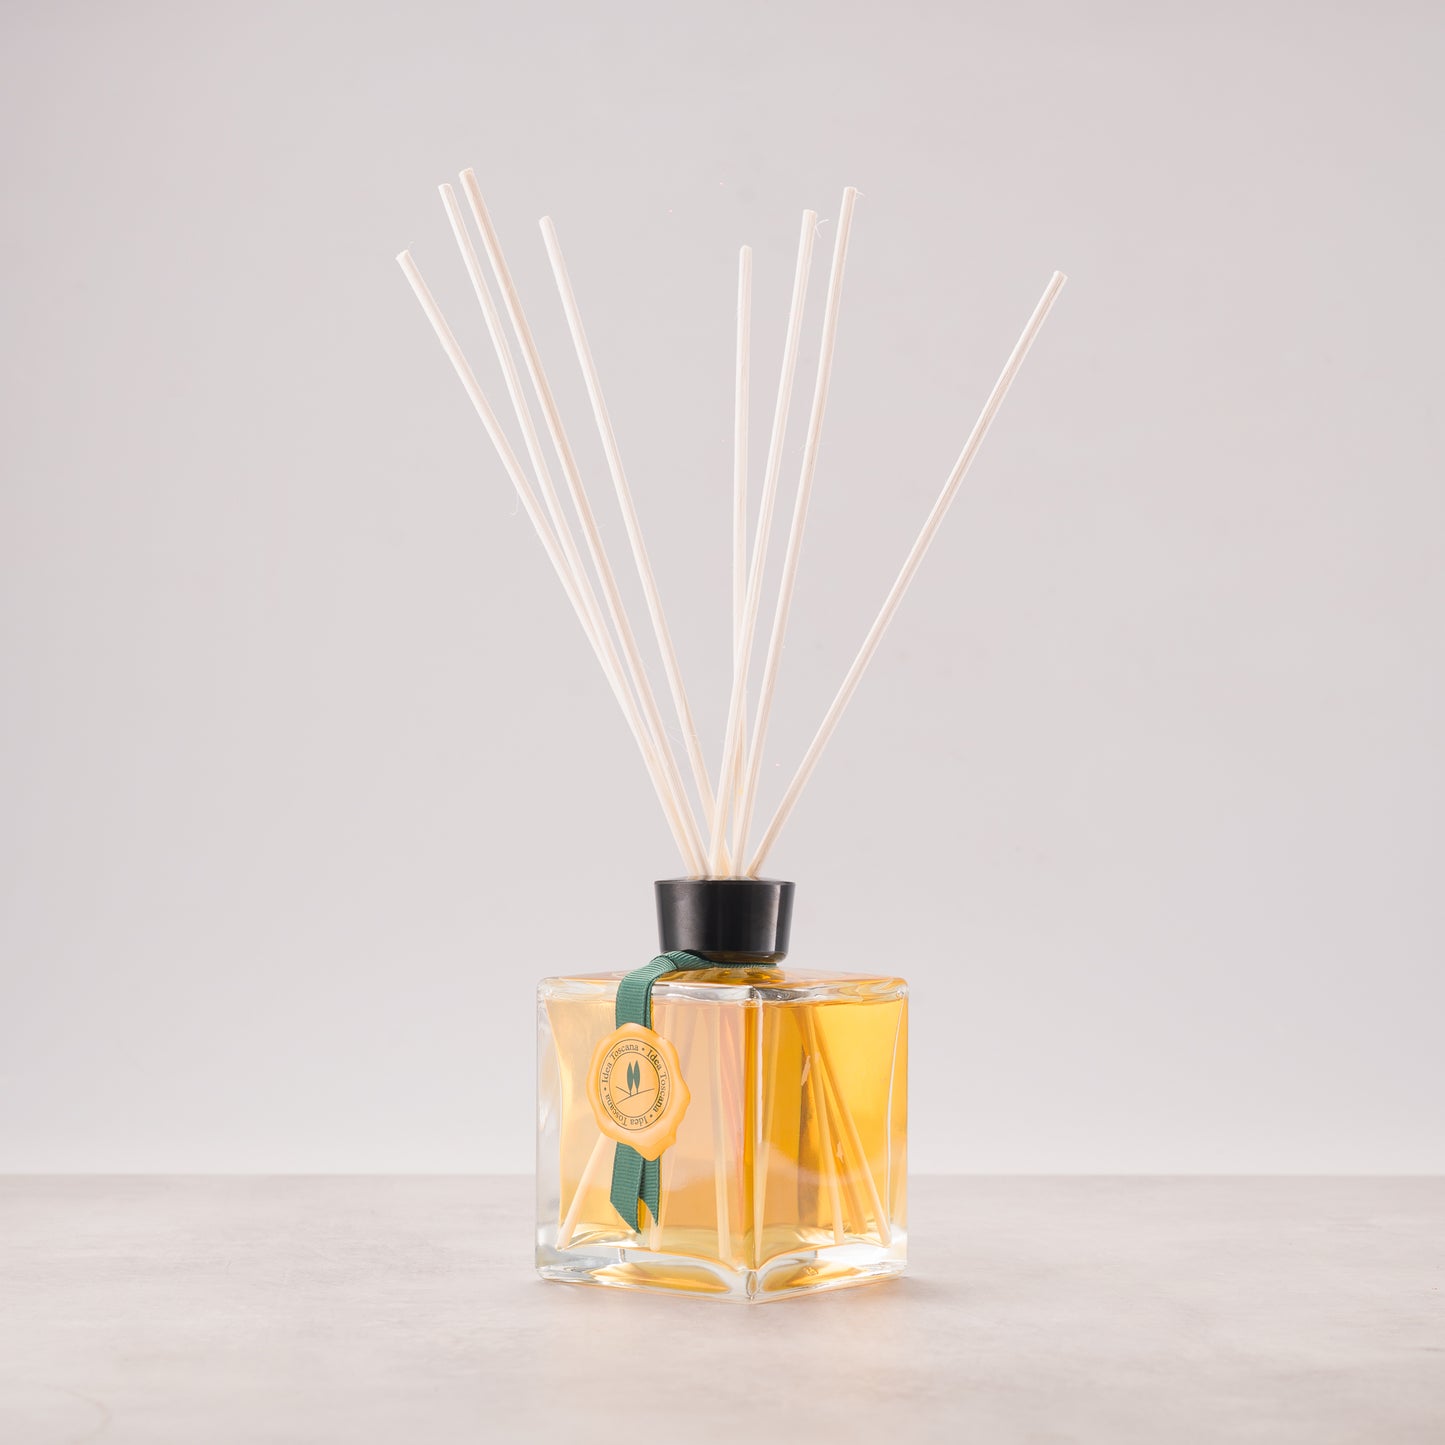 OLIVE Perfume 250ml - Idea Toscana